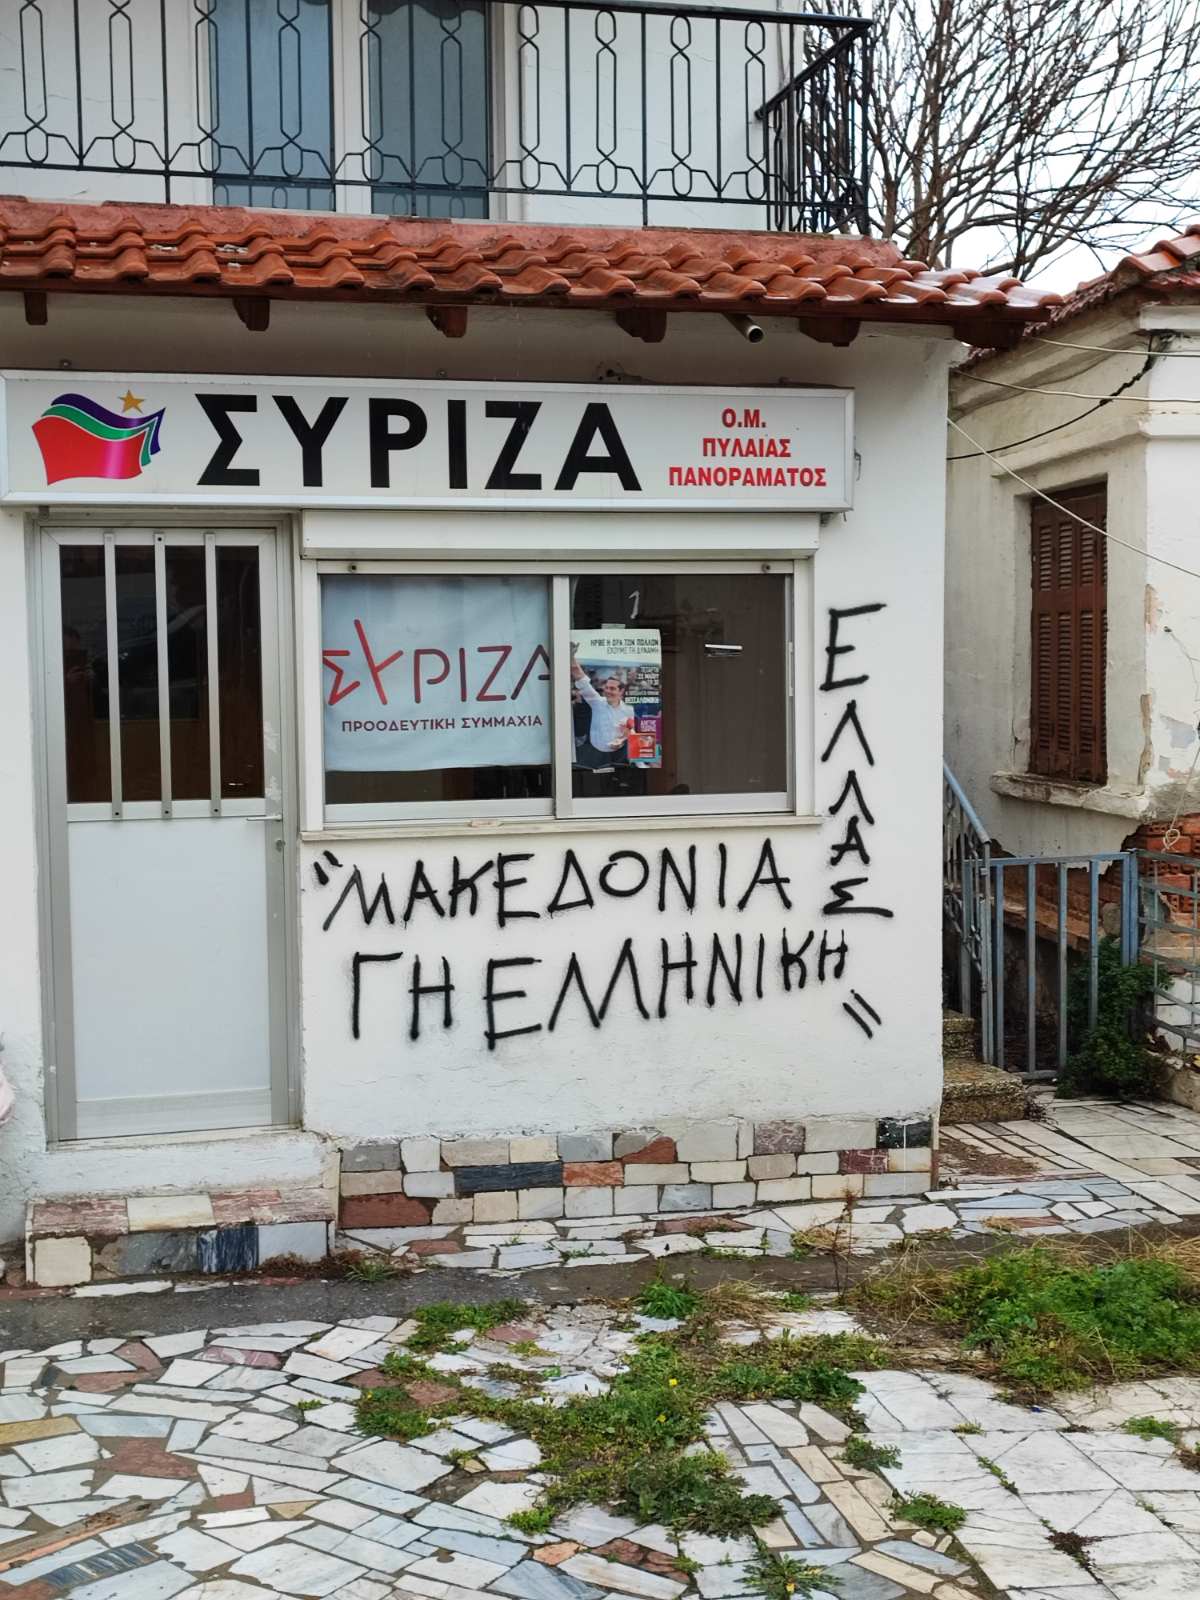  ​Ν.Ε. Β Θεσσαλονίκης ΣΥΡΙΖΑ-ΠΣ: Επίθεση ακροδεξιών στα γραφεία του ΣΥΡΙΖΑ-Π.Σ. στην Πυλαία